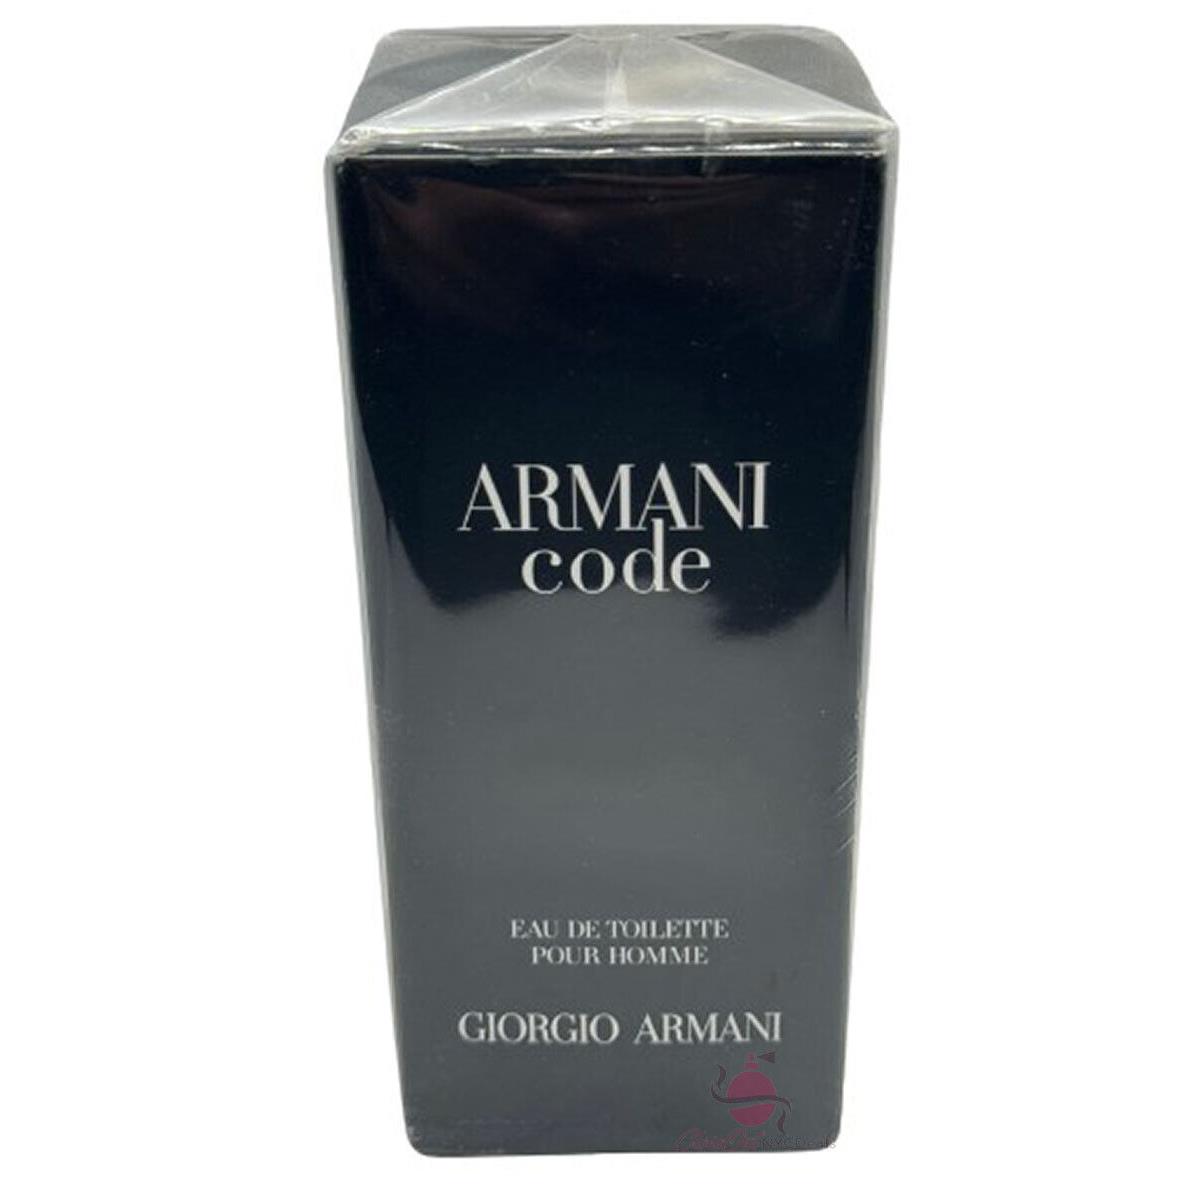 Armani Code 1.7 oz Cologne For Men by Giorgio Armani Edt Spray